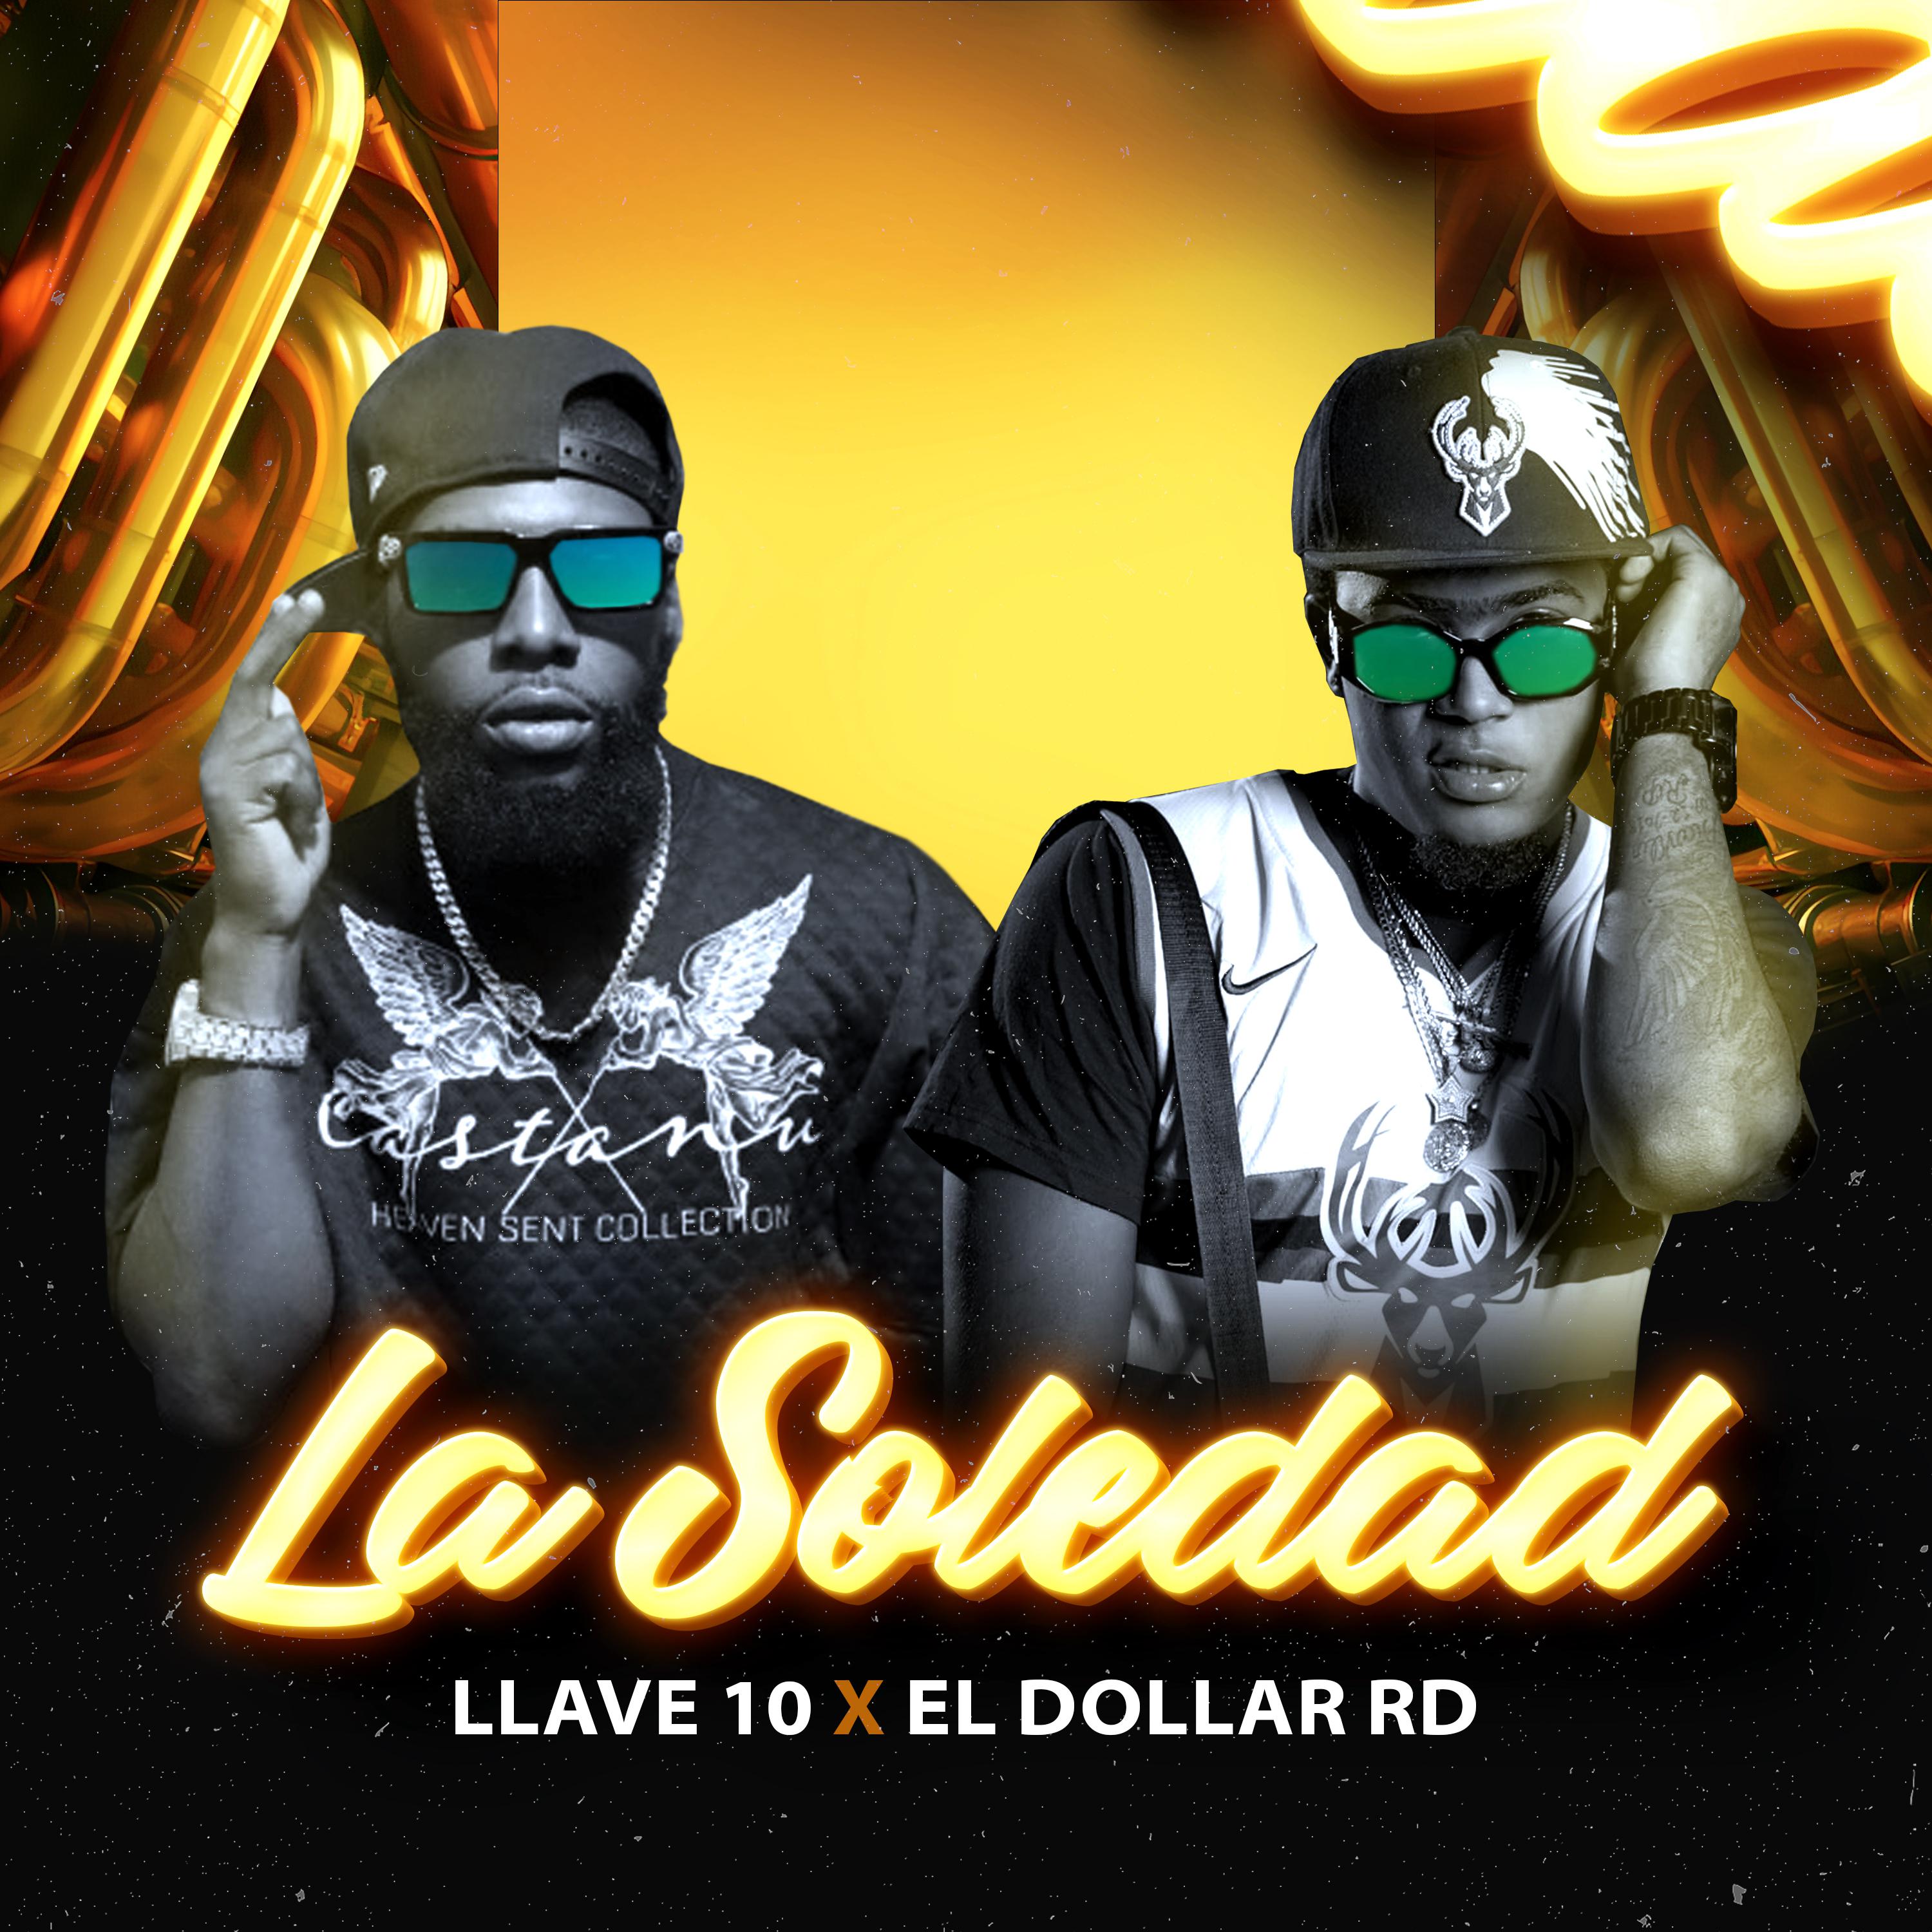 Постер альбома La Soledad